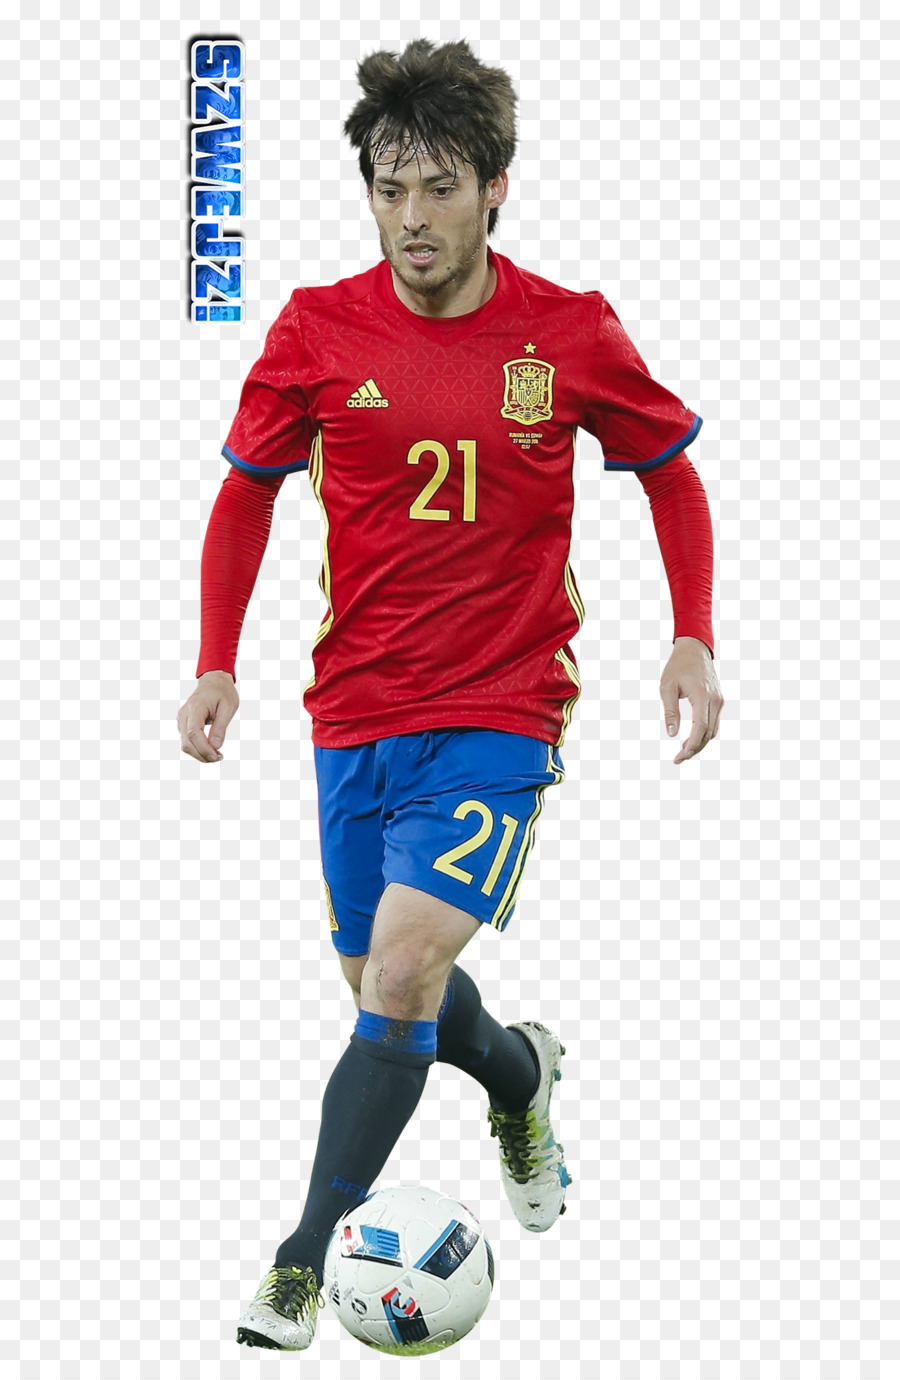 Álvaro Morata Jersey Tây ban nha bóng đá quốc gia đội bóng Đá chơi môn thể thao đồng Đội - silva david